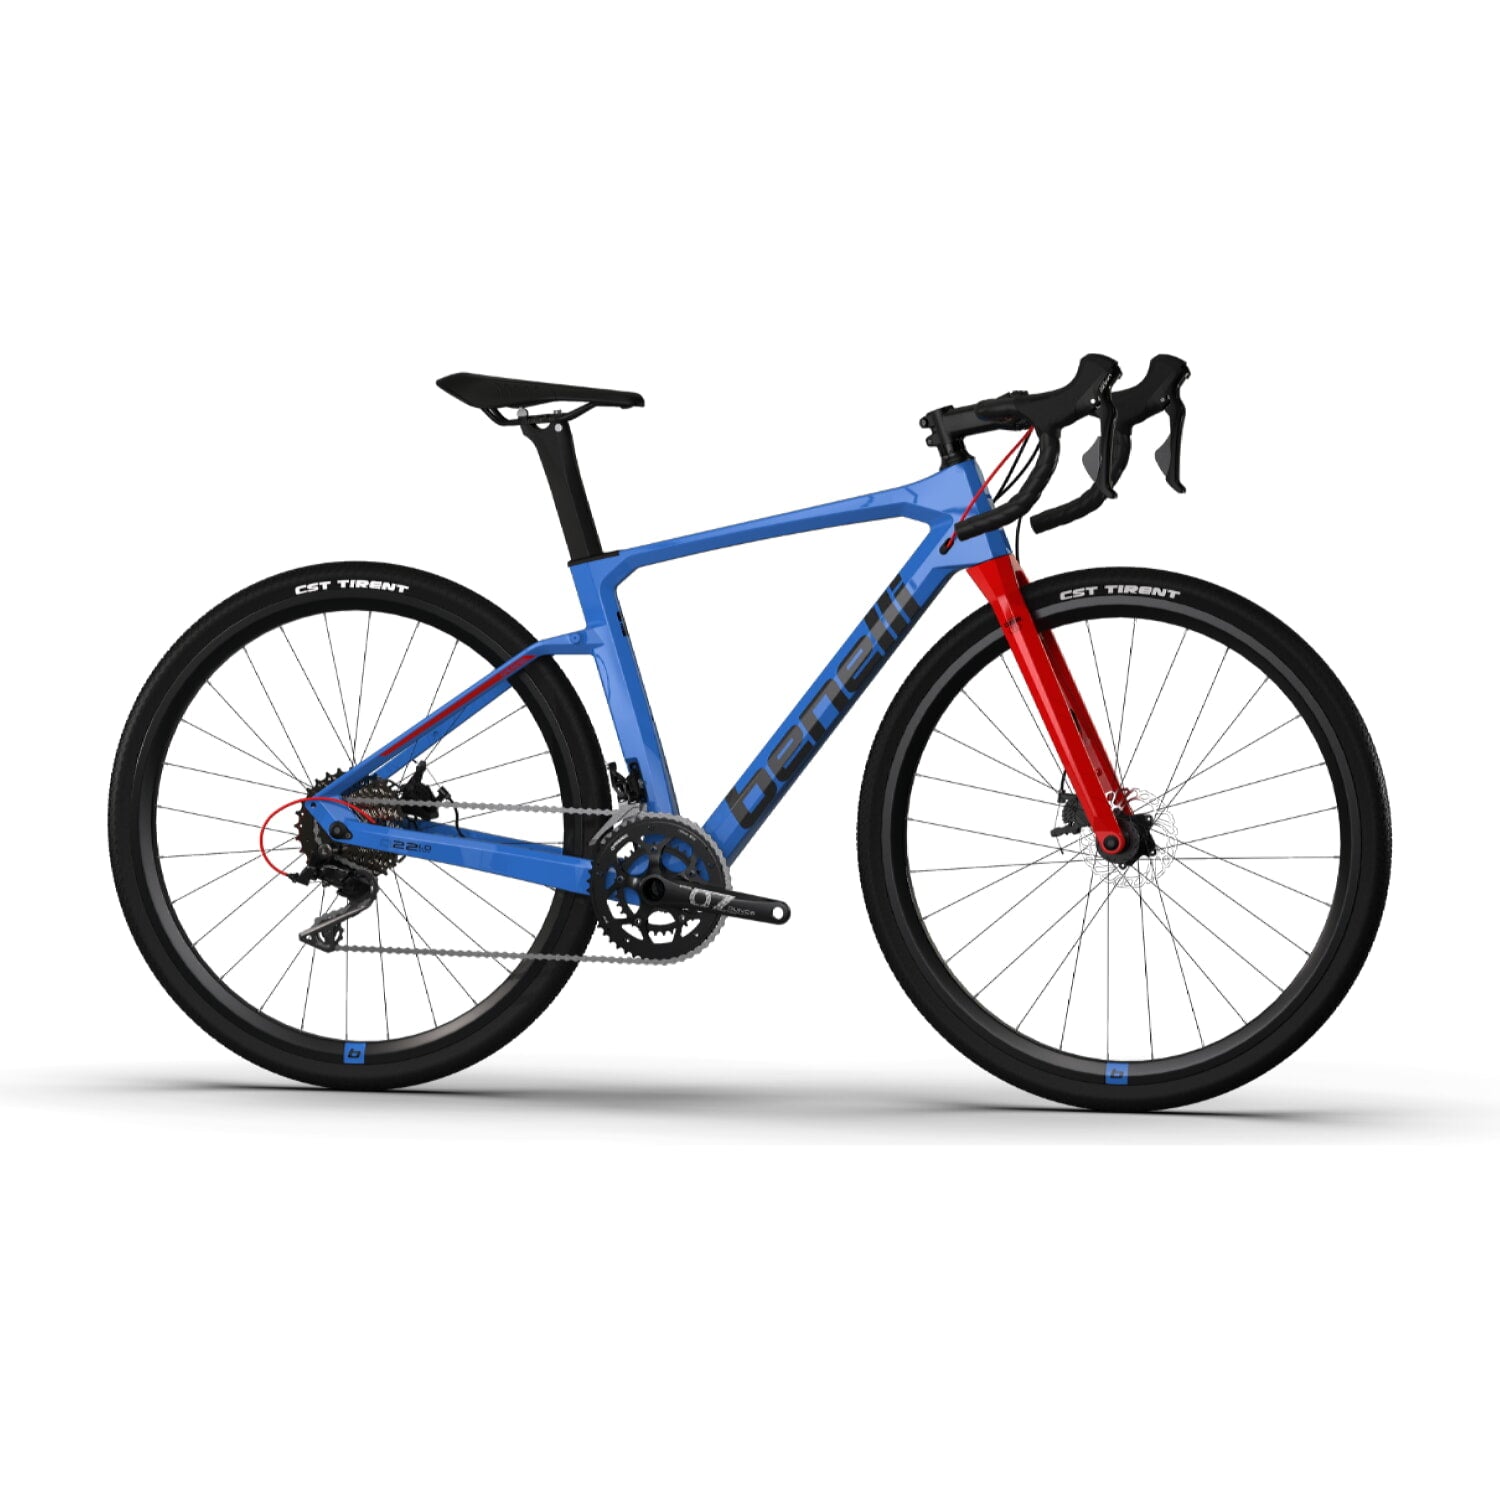 Bicicleta Gravel Benelli Carb. (G22 1.0 Adv Carb) Color Azul/Negro Talla M